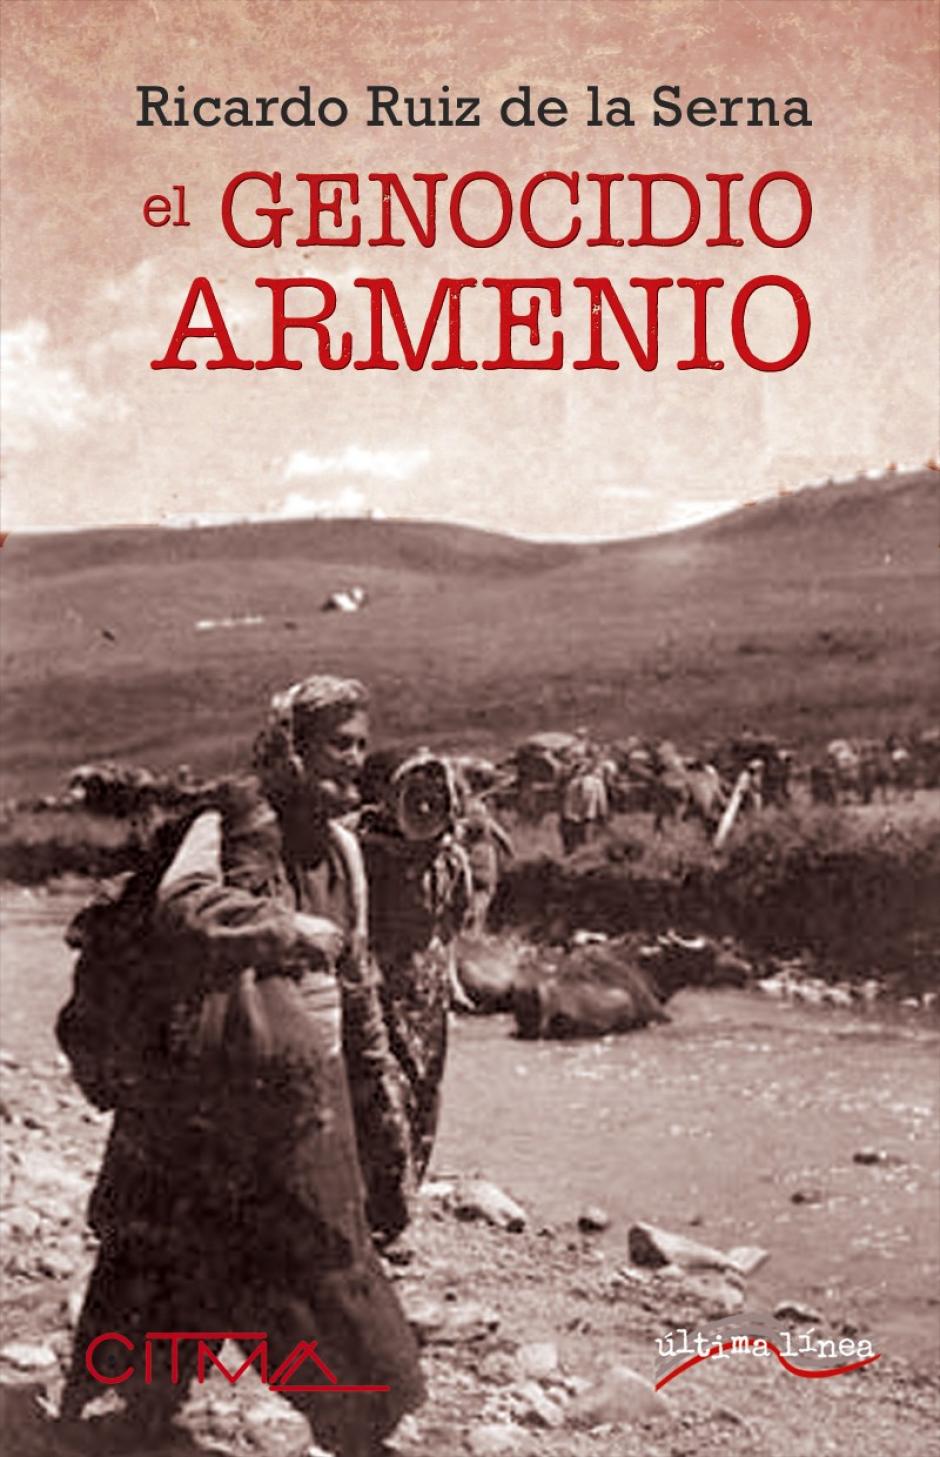 El genocidio armenio, escrito por Ricardo Ruíz de la Serna, en editorial Citma